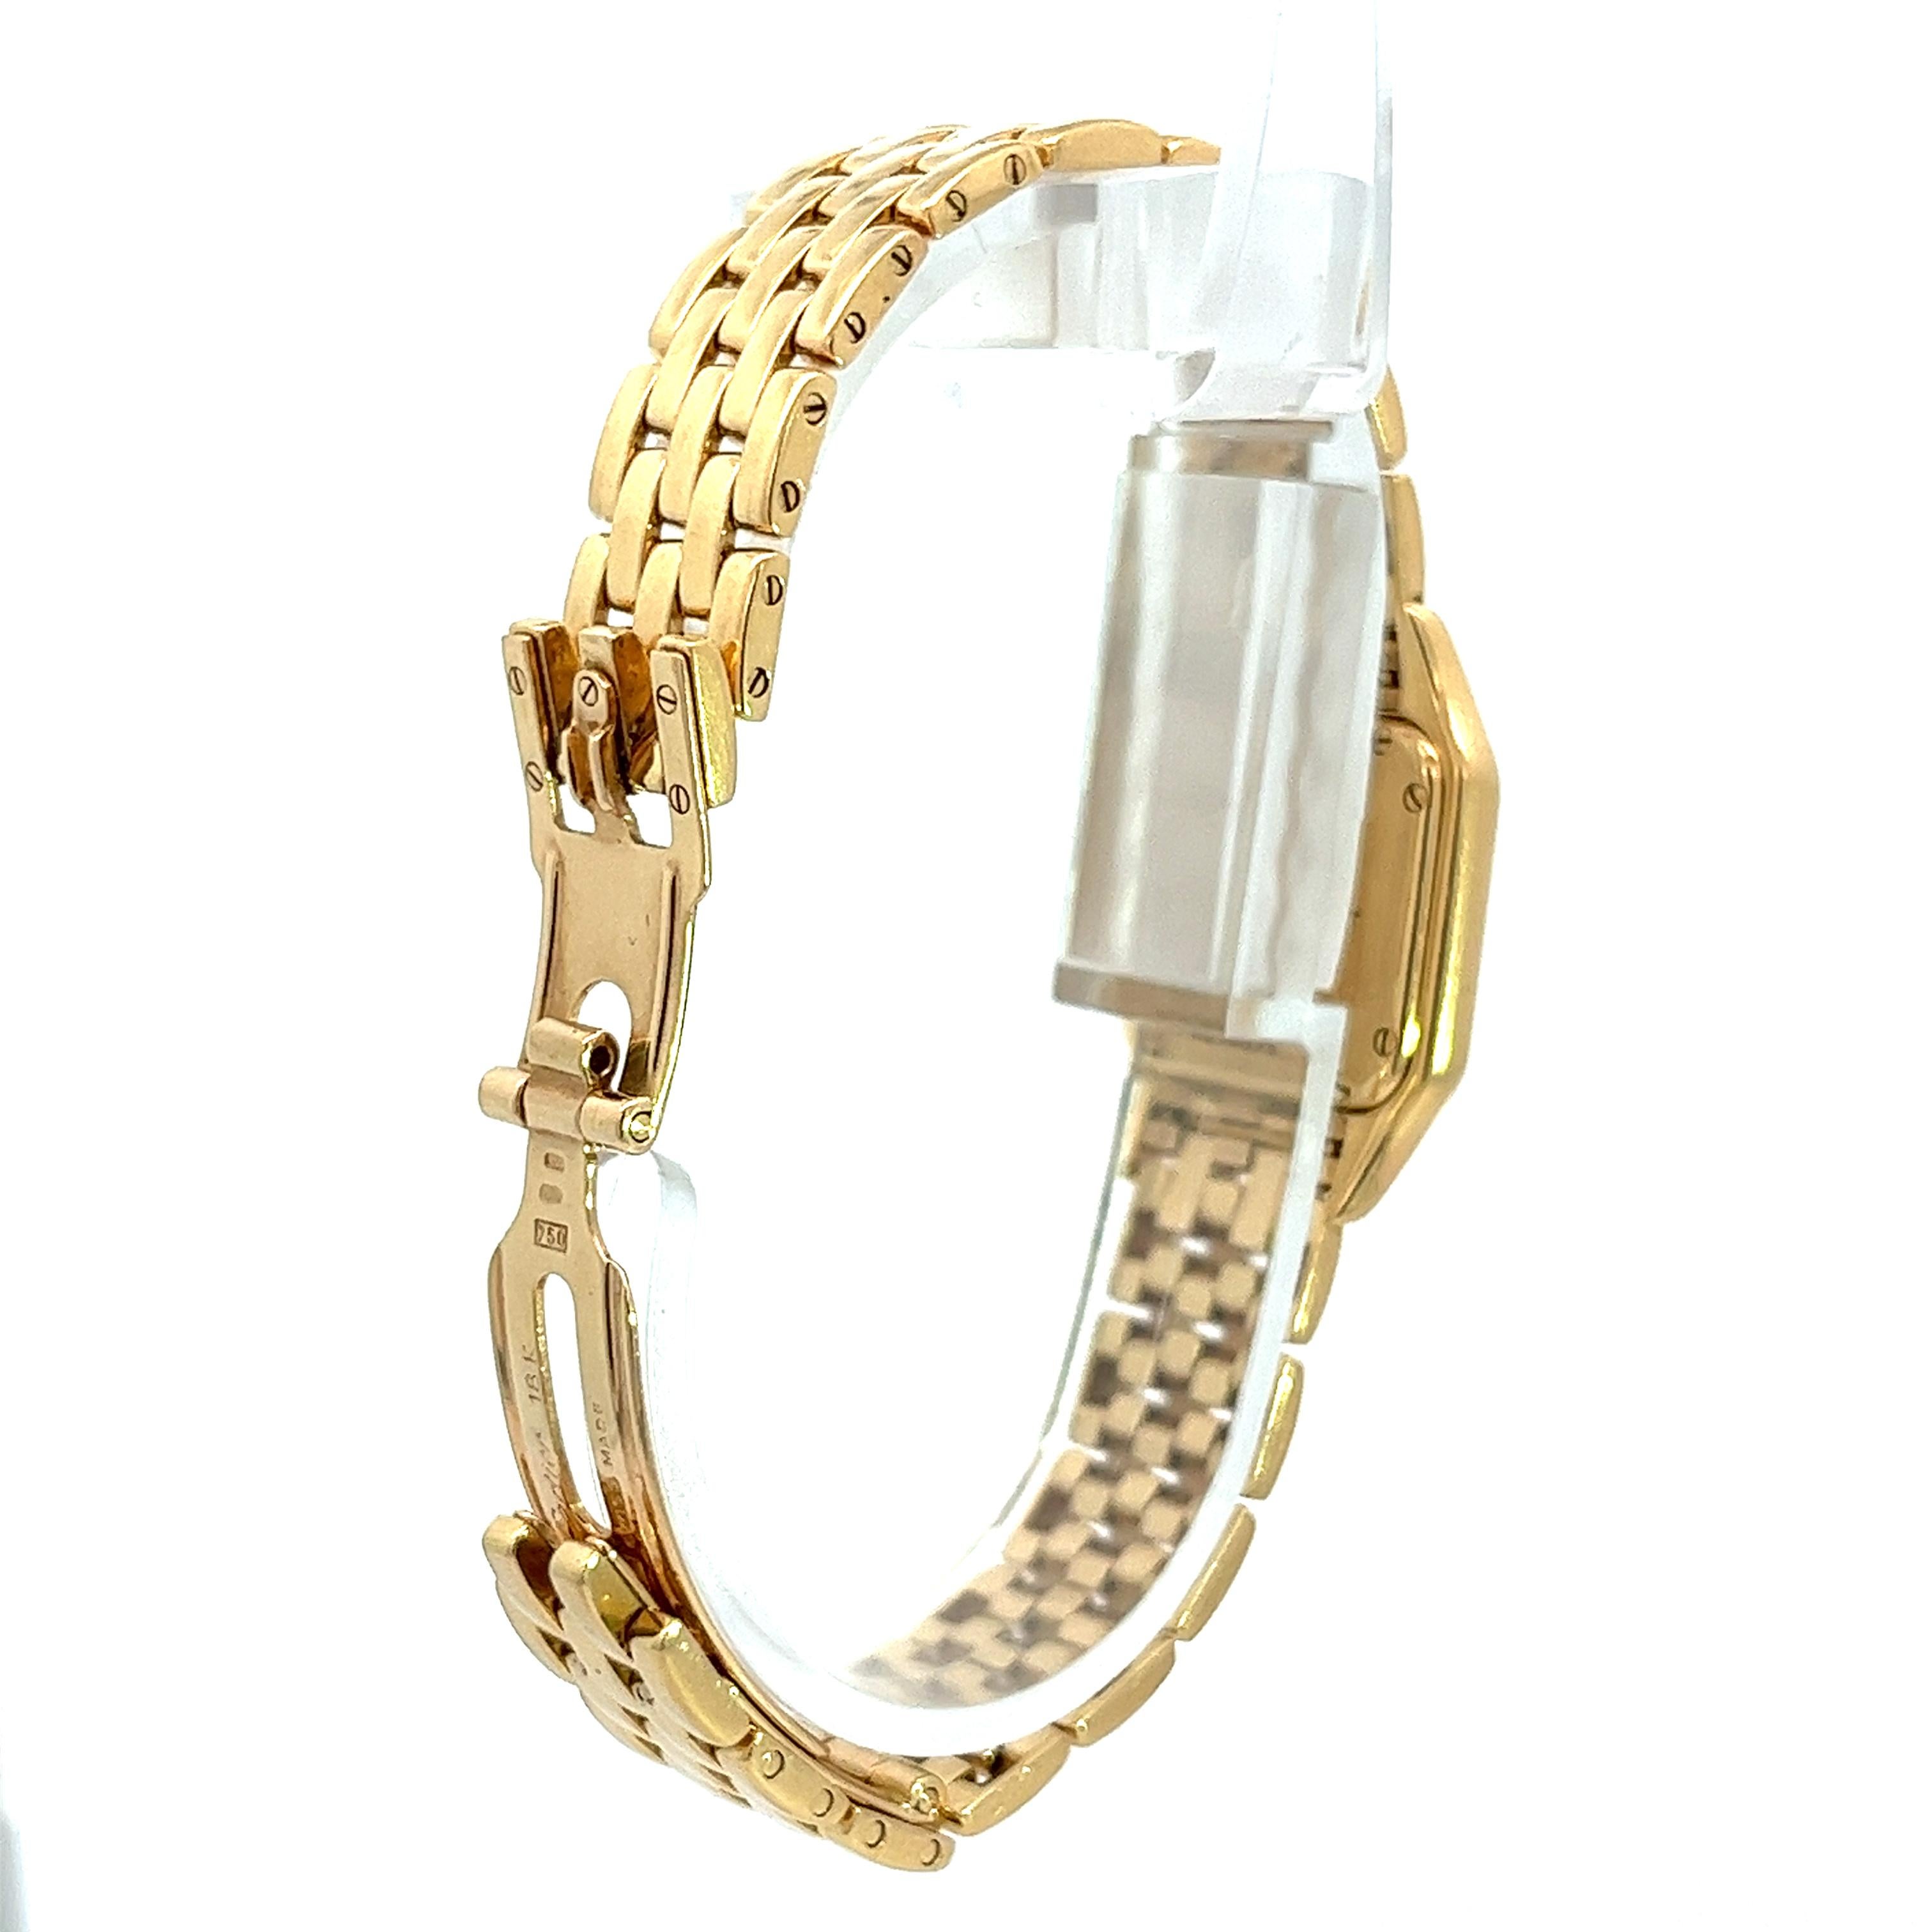 Women's Cartier Panthere MOP 22mm Factory Diamond Bezel Watch in 18K Yellow Gold